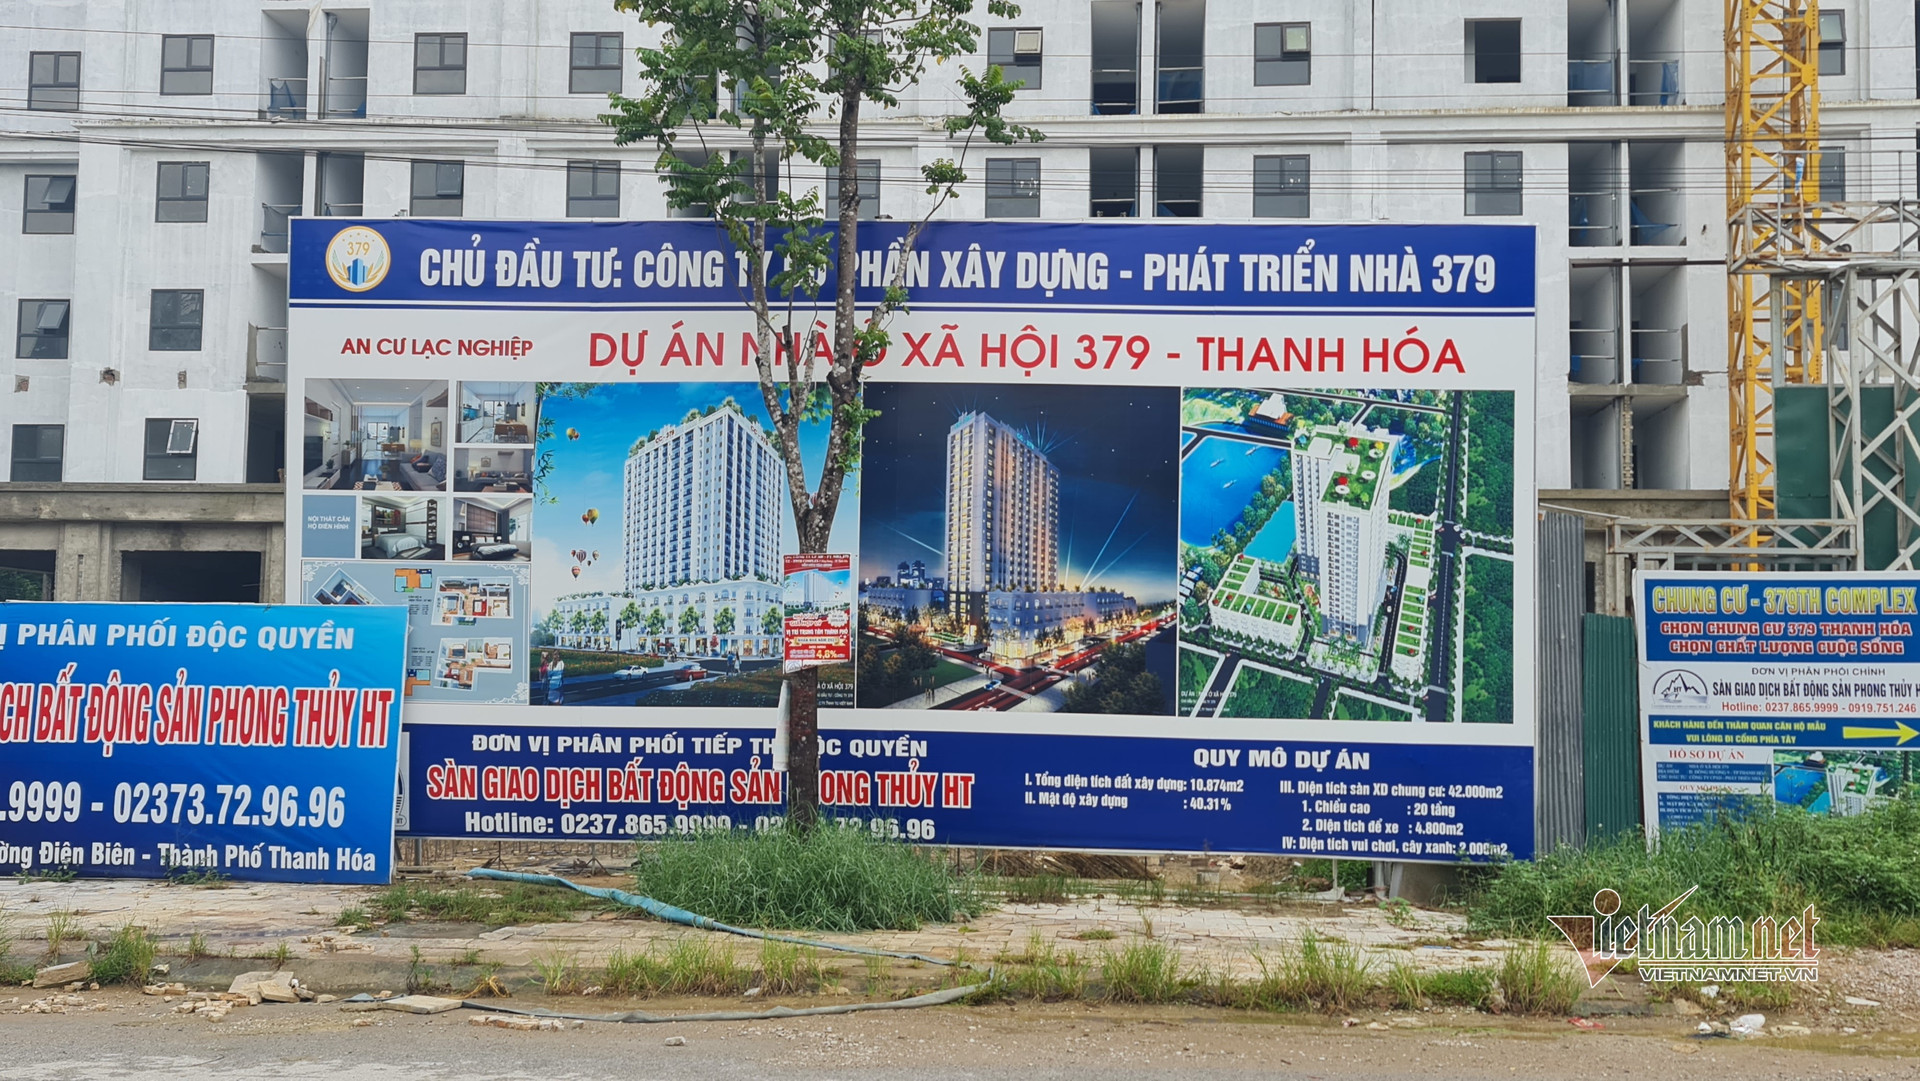 Nhà ở xã hội 379 ở Thanh Hóa chưa được cấp giấy chứng nhận quyền sử dụng đất